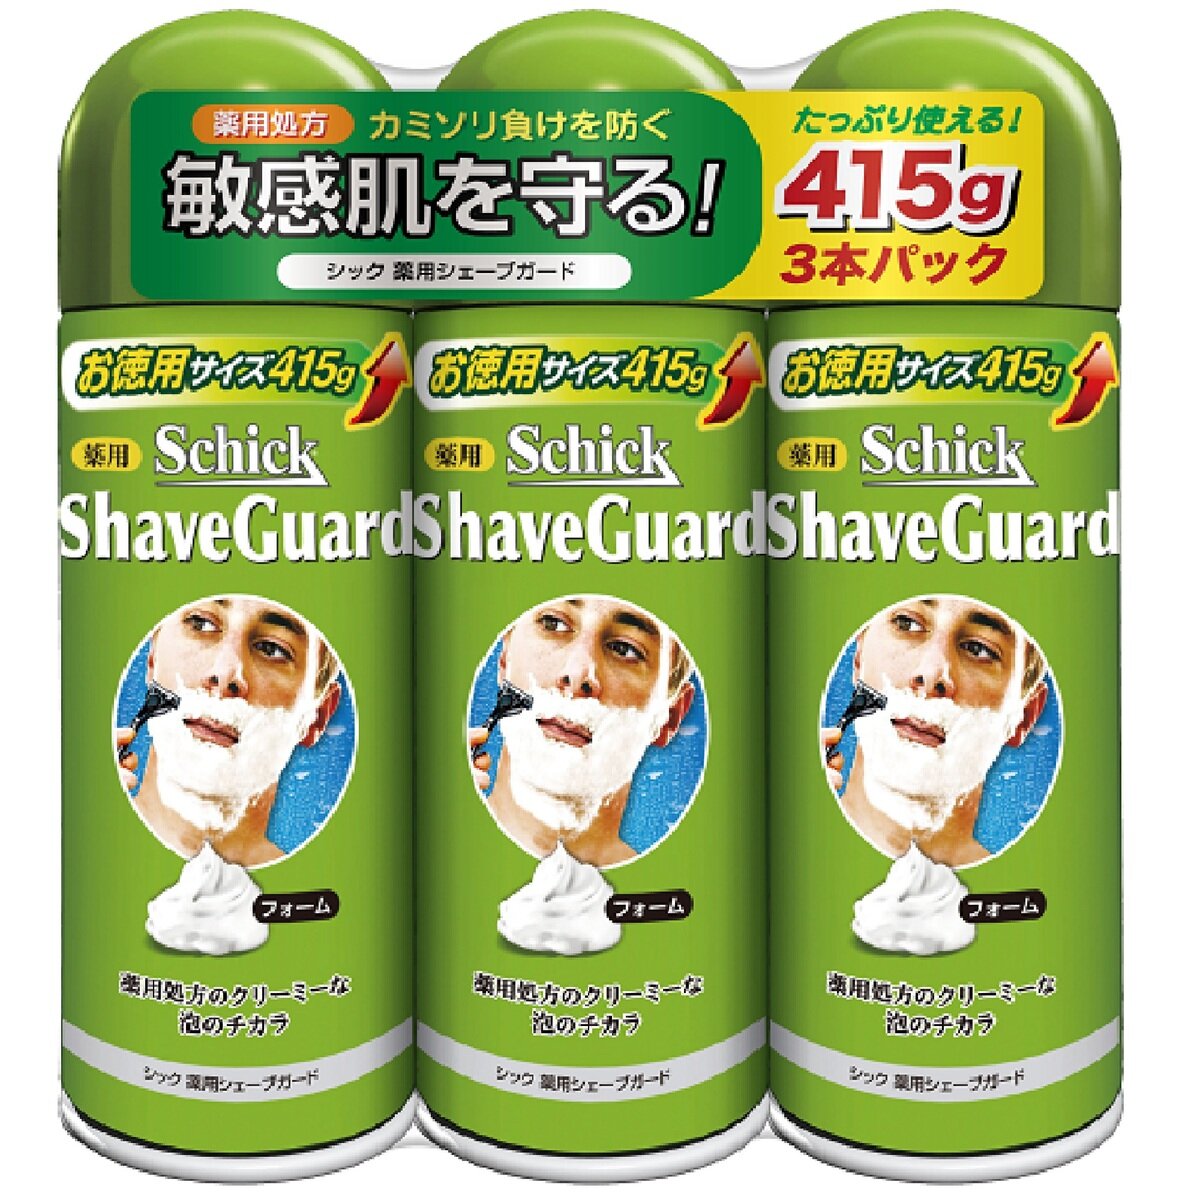 Schick(シック) 薬用シェーブガード 415gx3本パック | Costco Japan